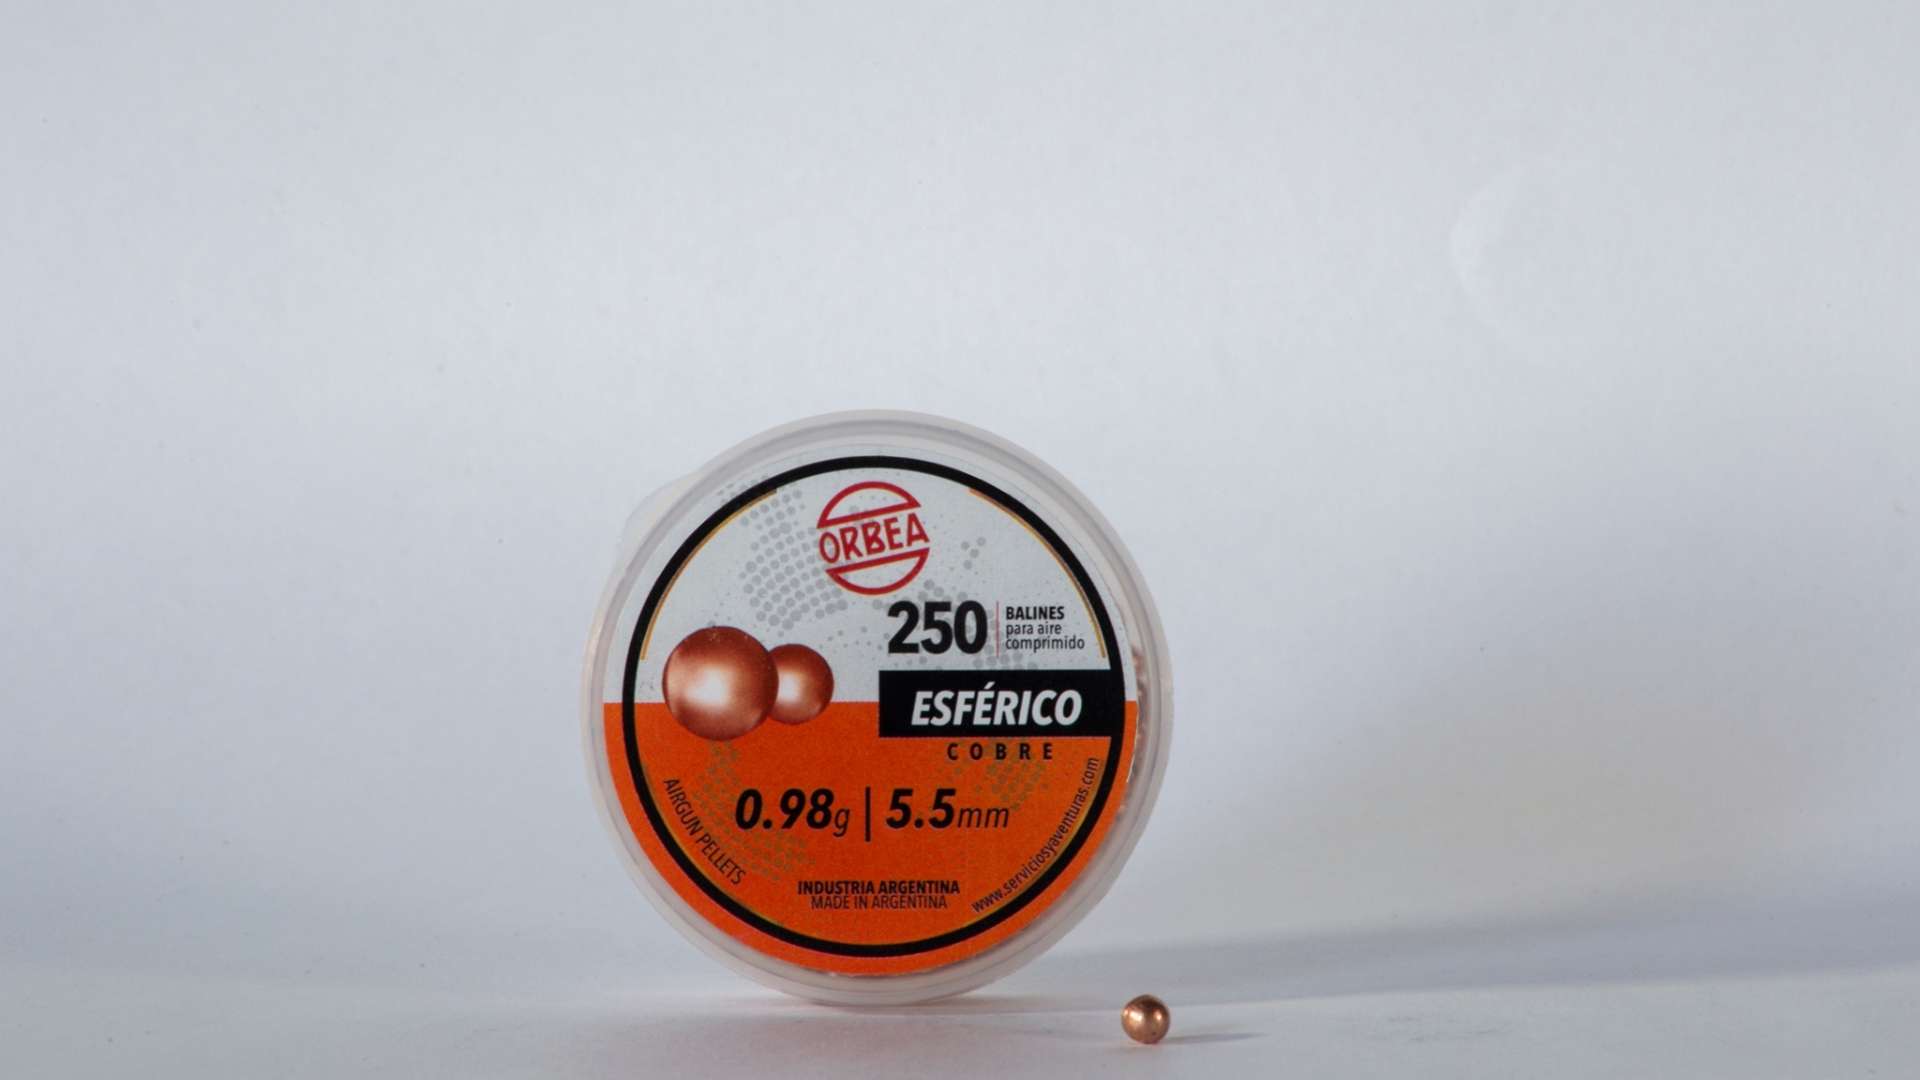 BALIN ESFERICO – 5.5mm – 0.98gr – Servicios y Aventuras